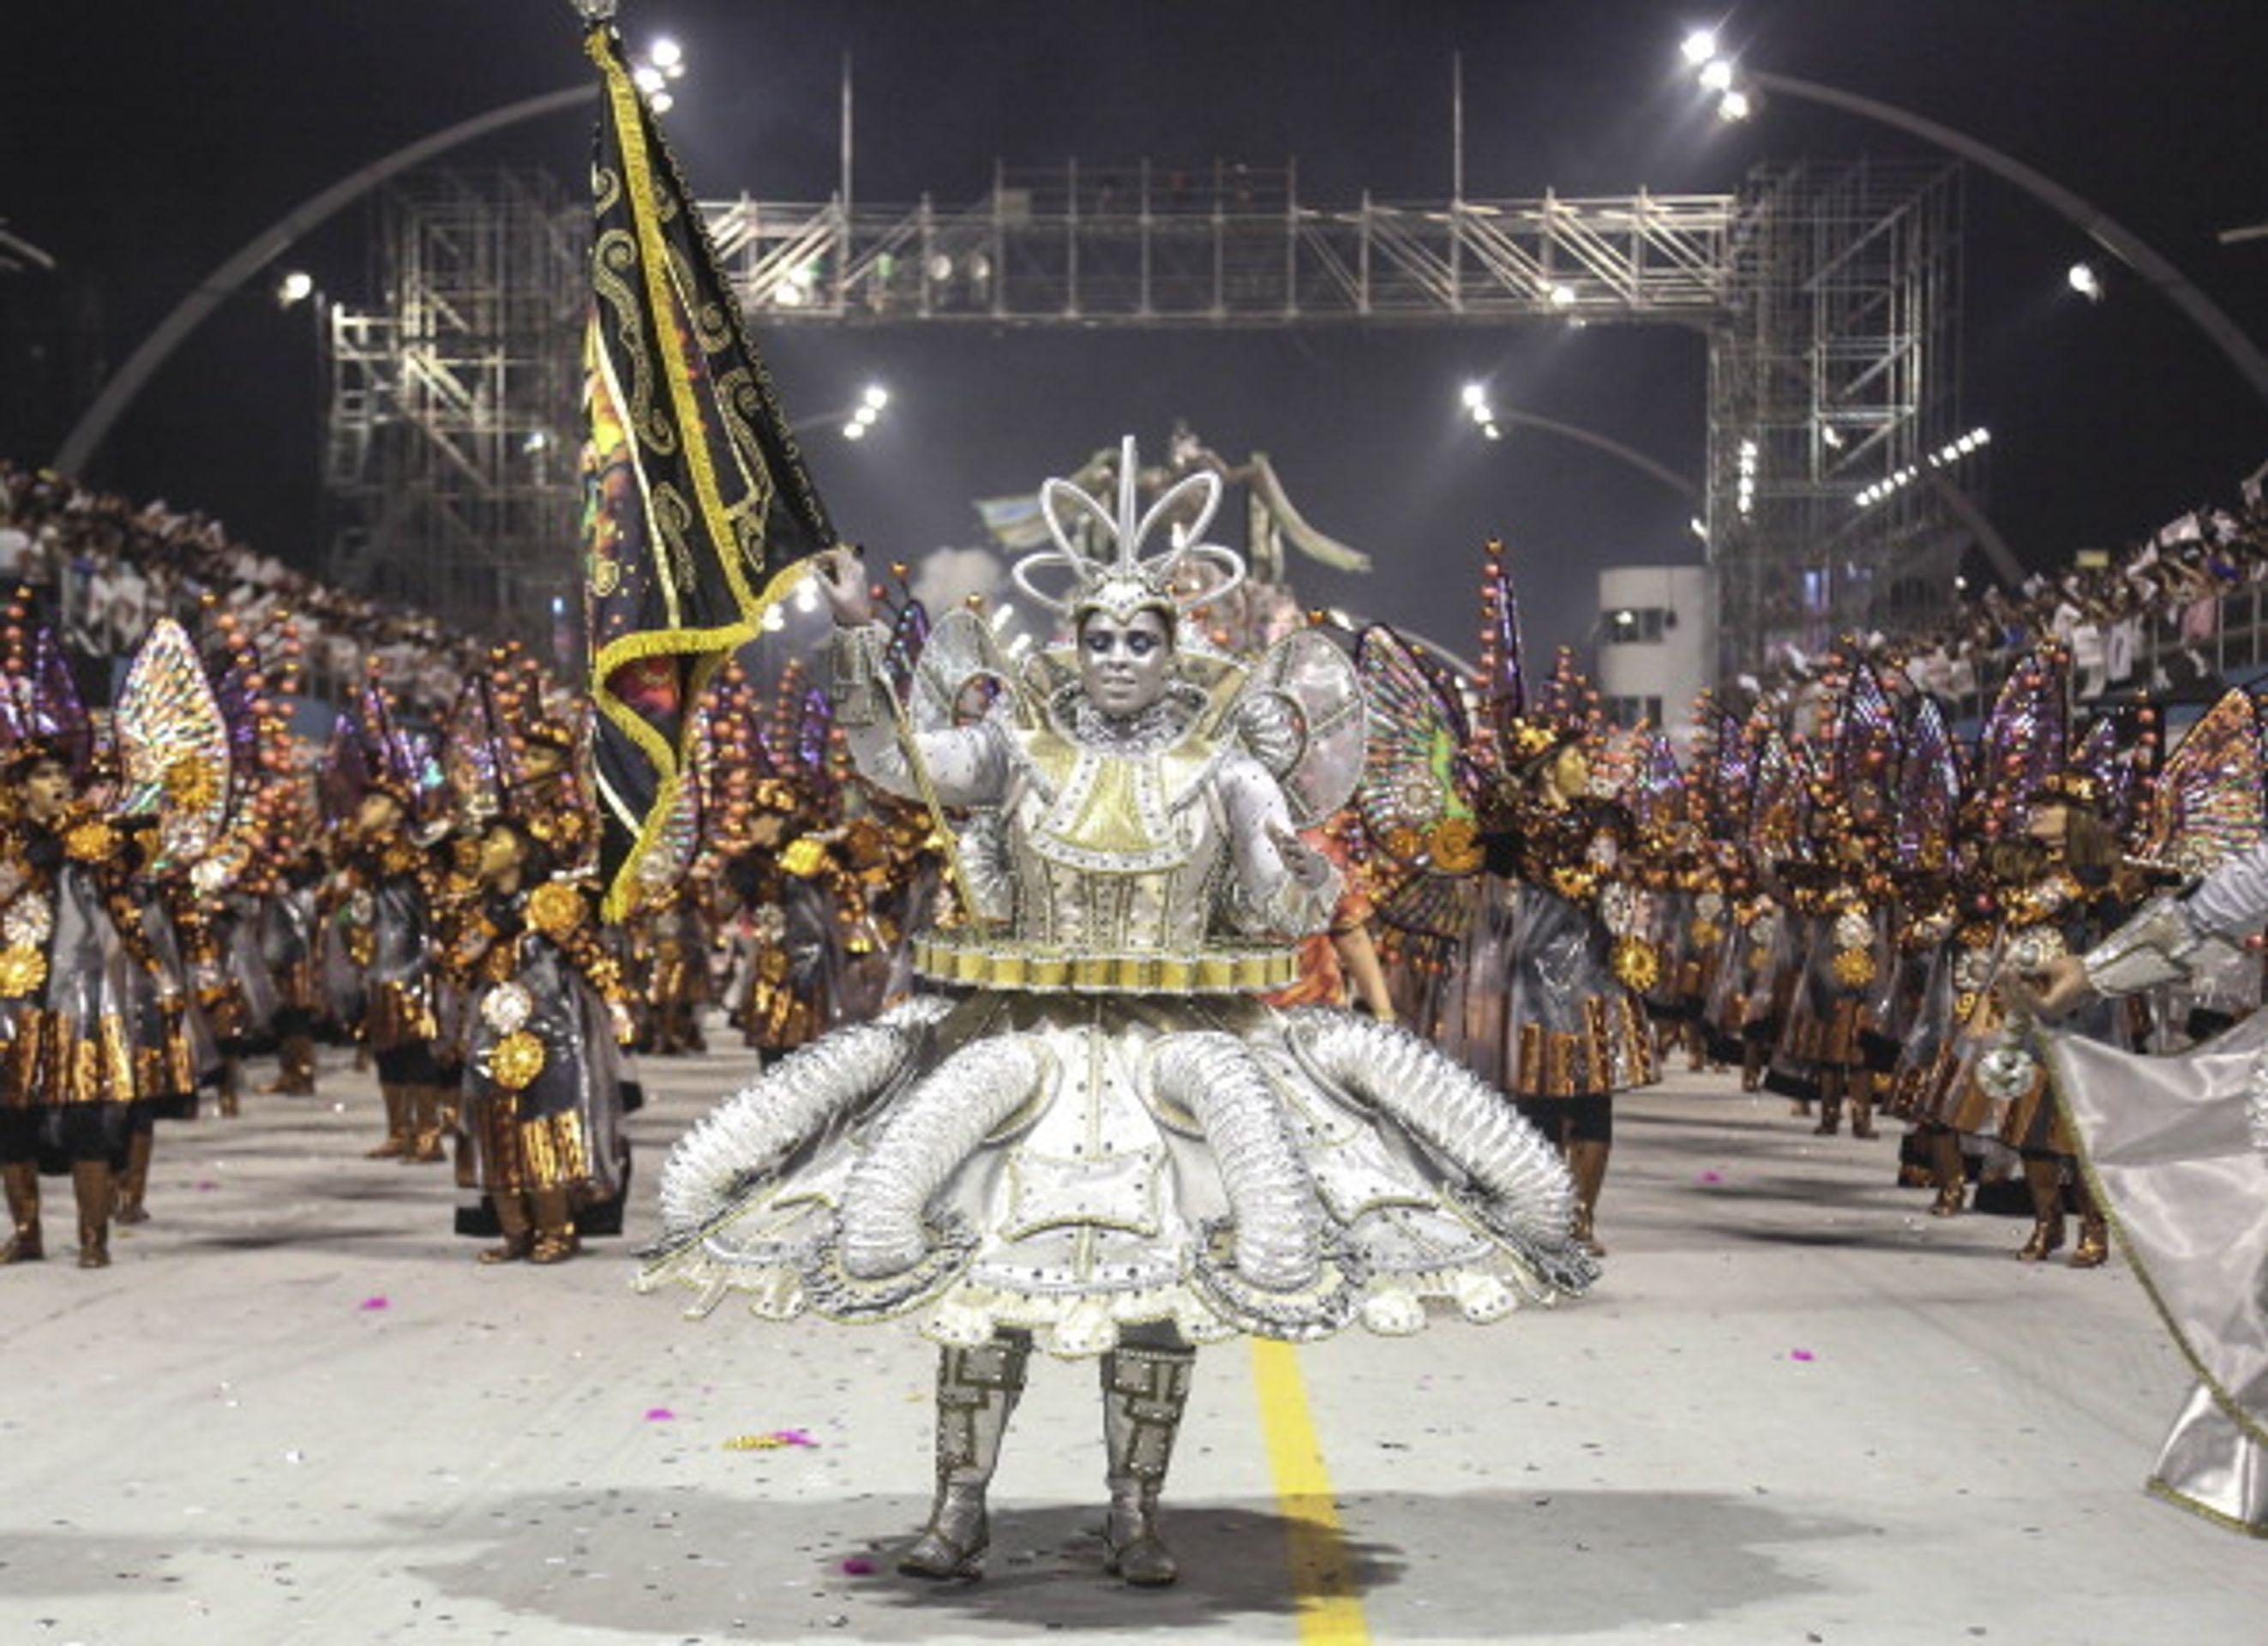 Karneval v Riu de Janeru - 19 - Brazílie žije všemi barvami. Karneval začal! (7/19)